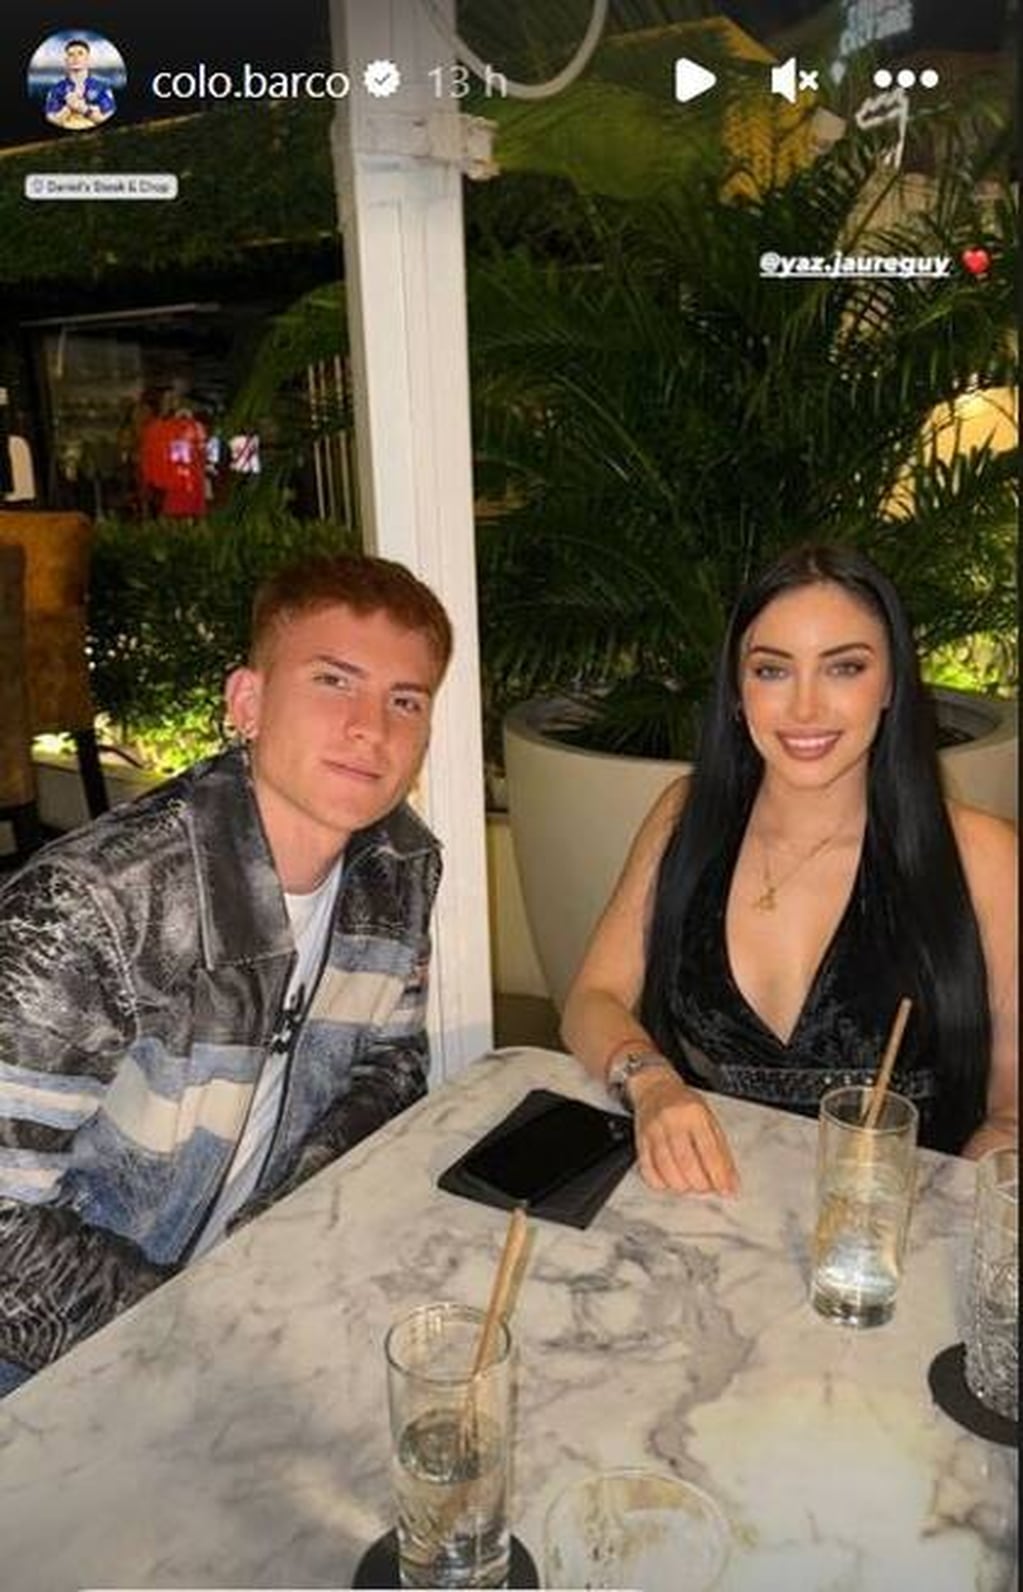 Valentín Barco subió una selfie junto a Yazmín Jaureguy en Aruba. Gentileza: Captura Instagram @colo.barco